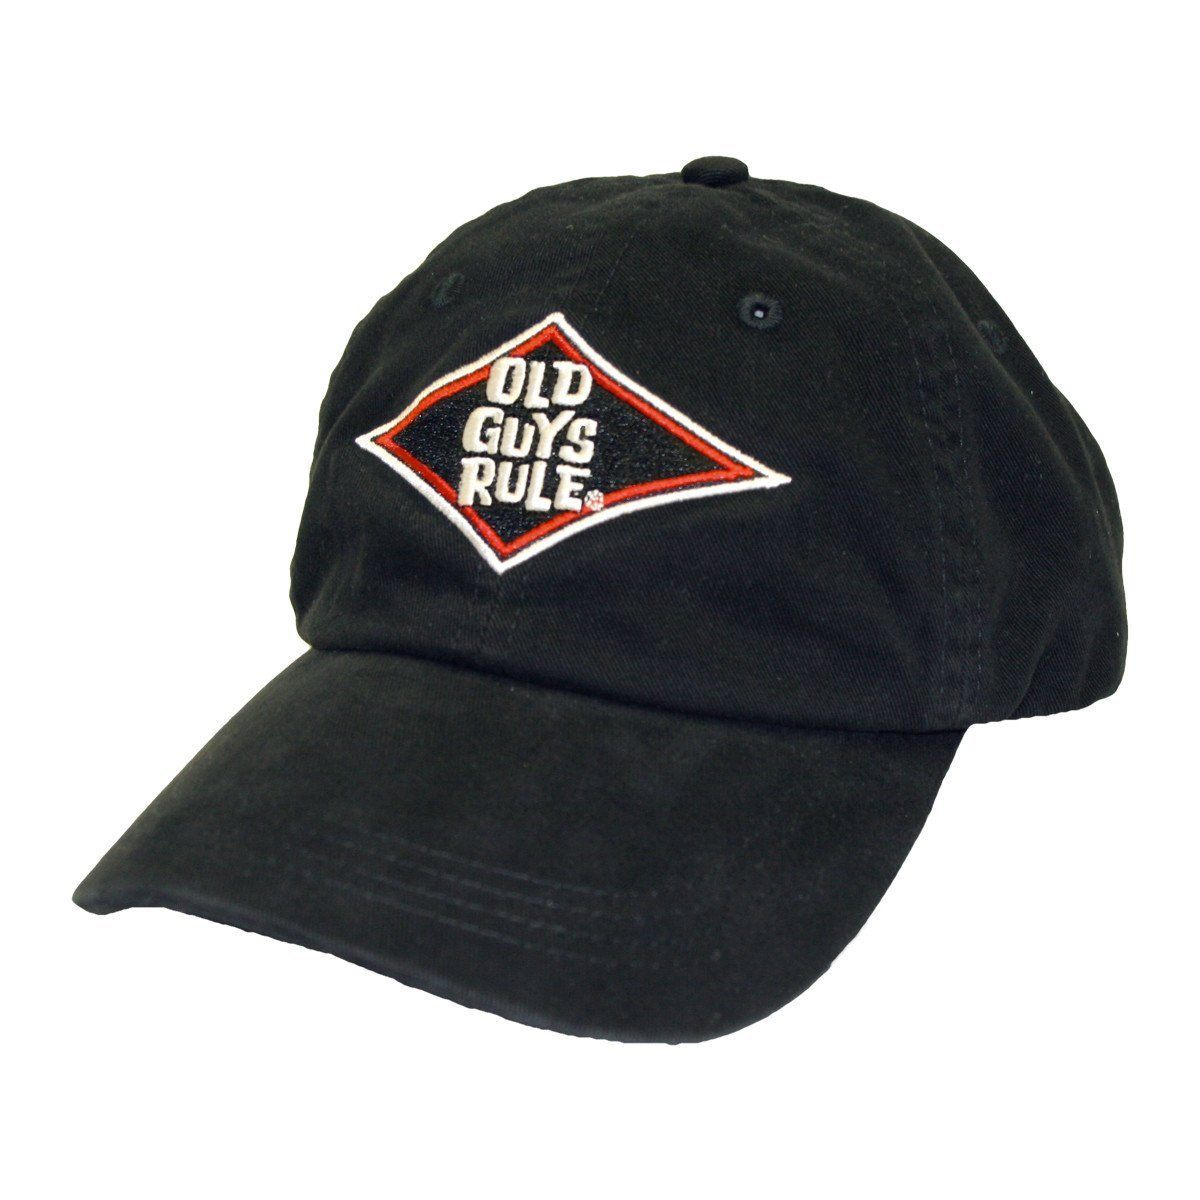 Buy Official Baseball Caps Online